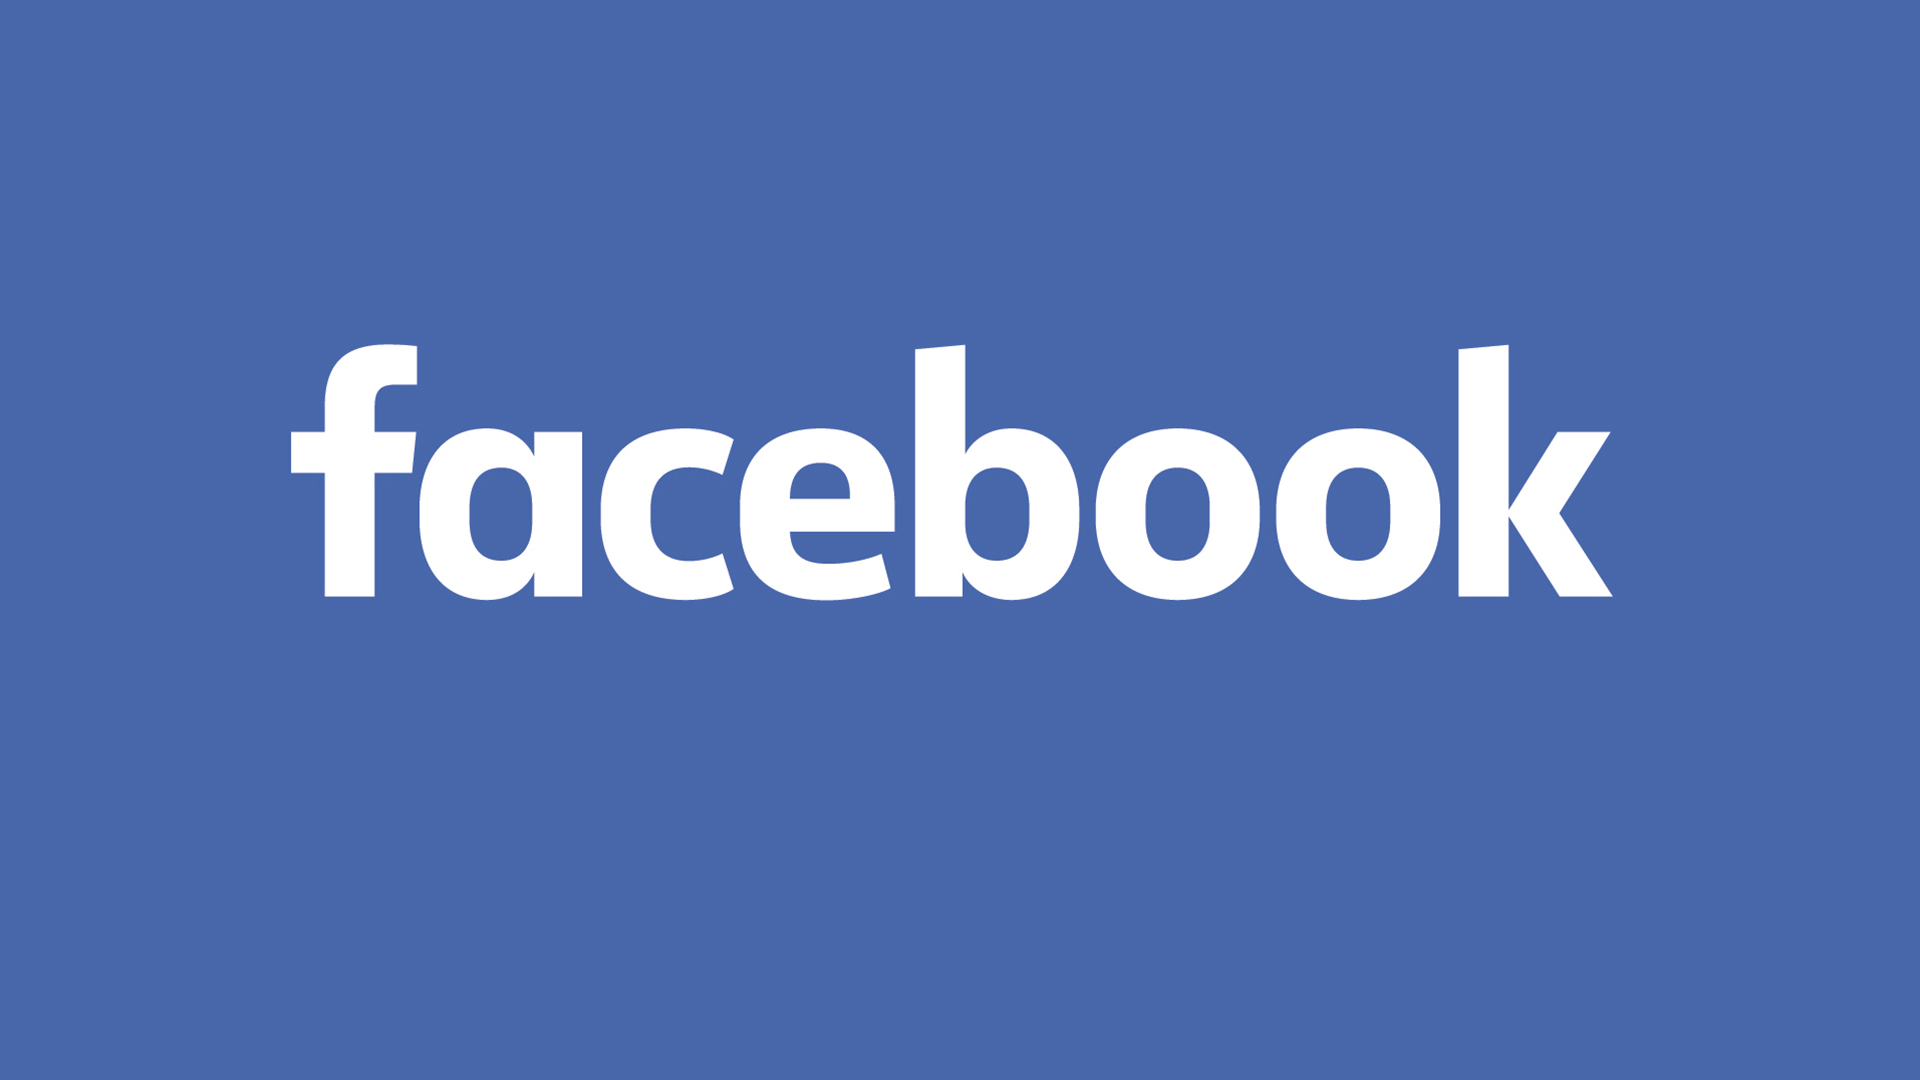 Facebook Logo - Facebook's 